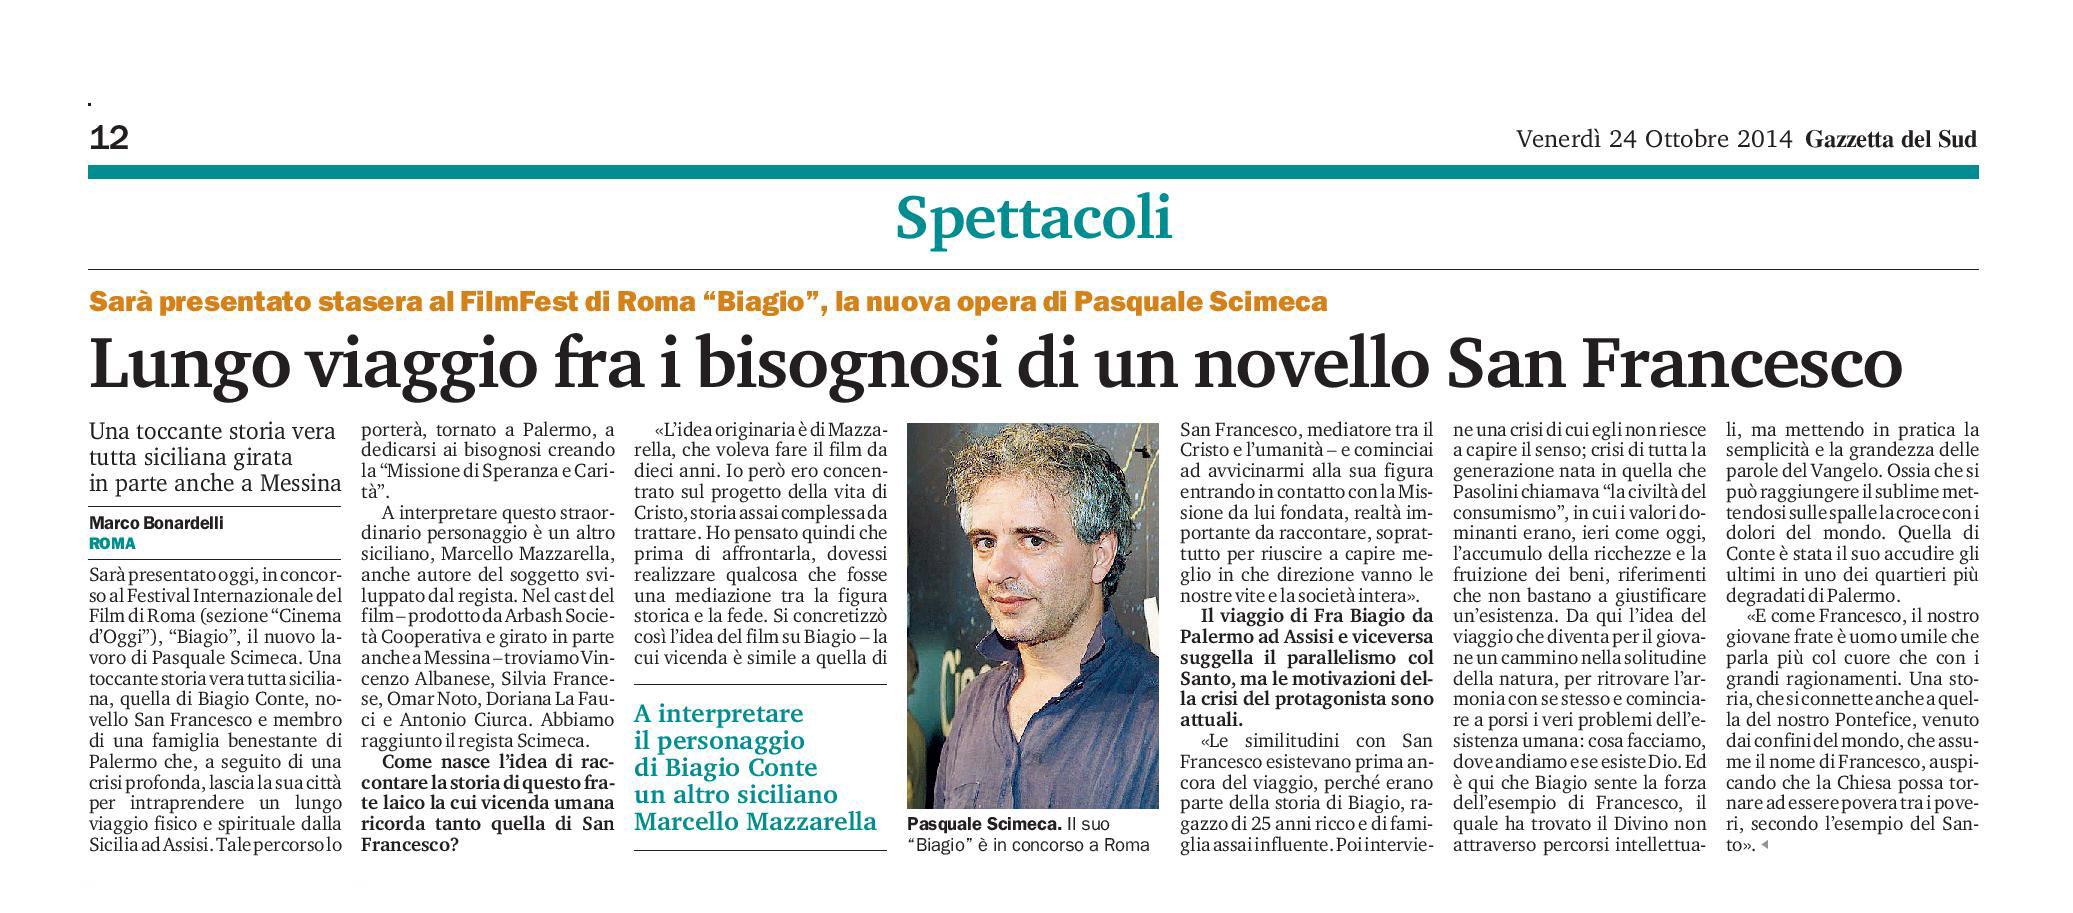 100 - Pasquale Scimeca - Viaggio tra i bisognosi di un novello San Francesco - 24 ottobre 2014-page-001.jpg